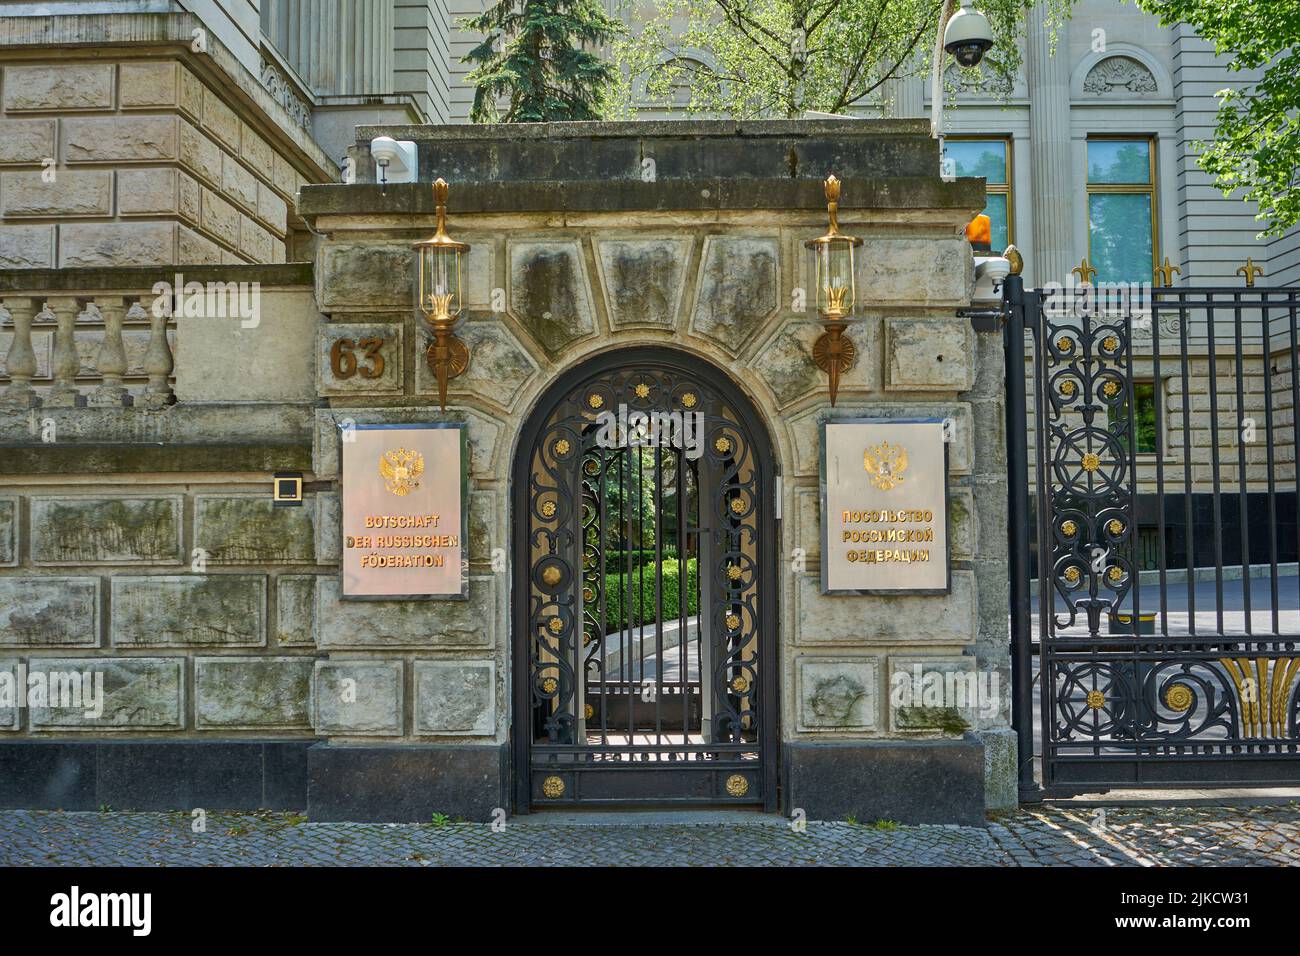 Russische Botschaft, Eingang, Berlin Mitte, Berlin, Allemagne Banque D'Images